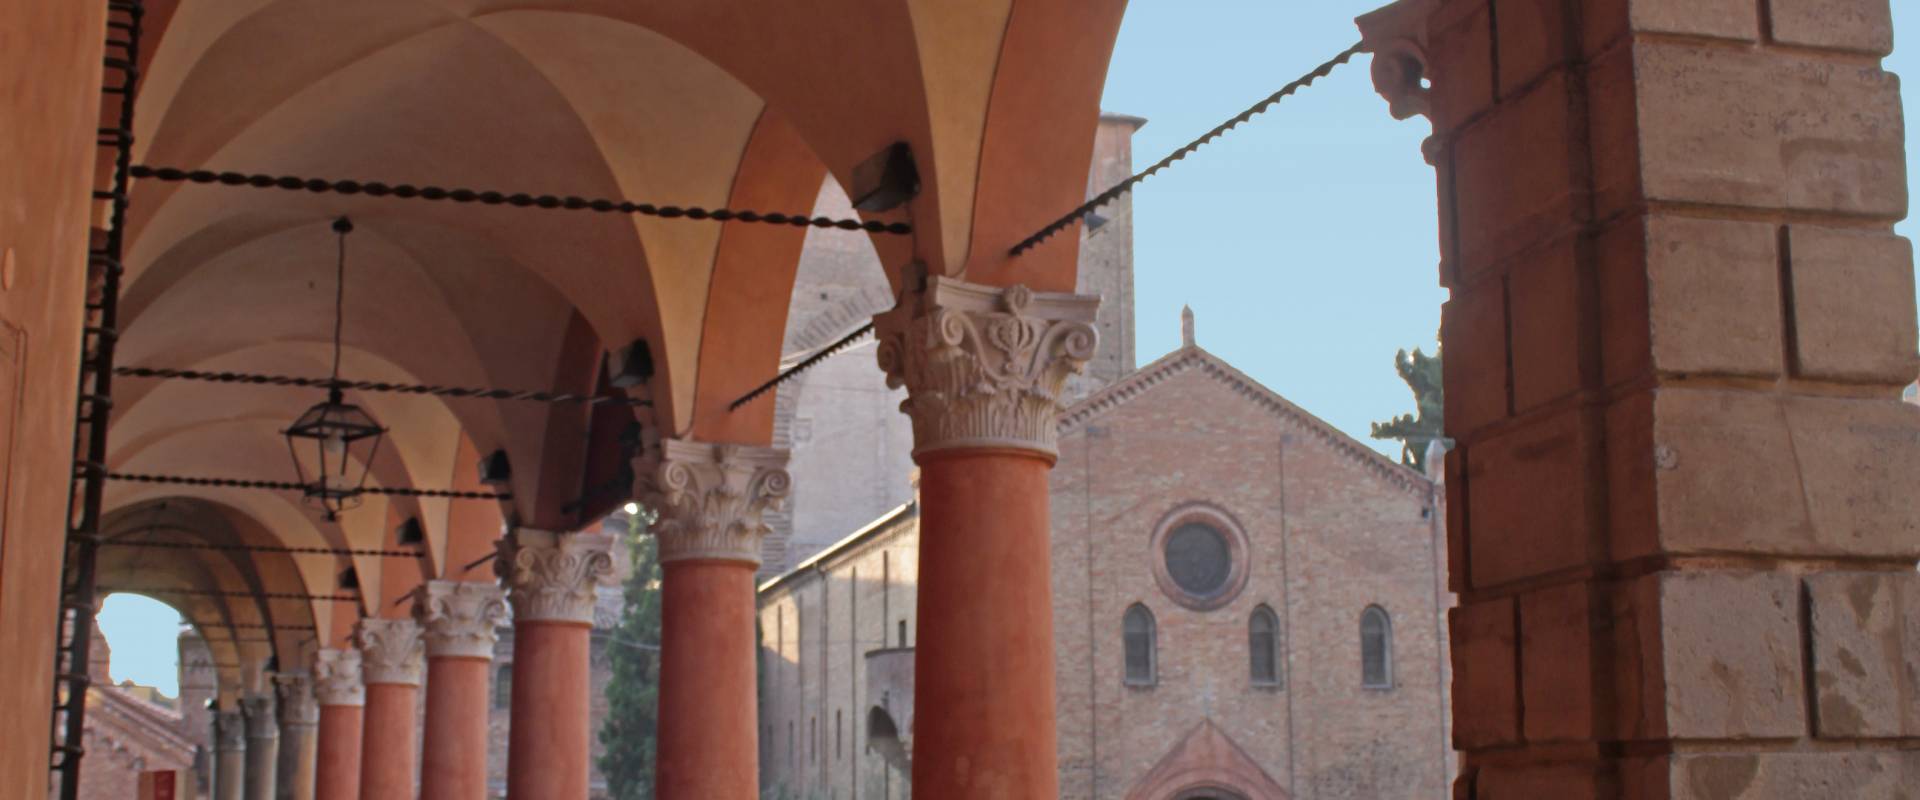 Portico di Santo Stefano (1) foto di Fabio Marseglia